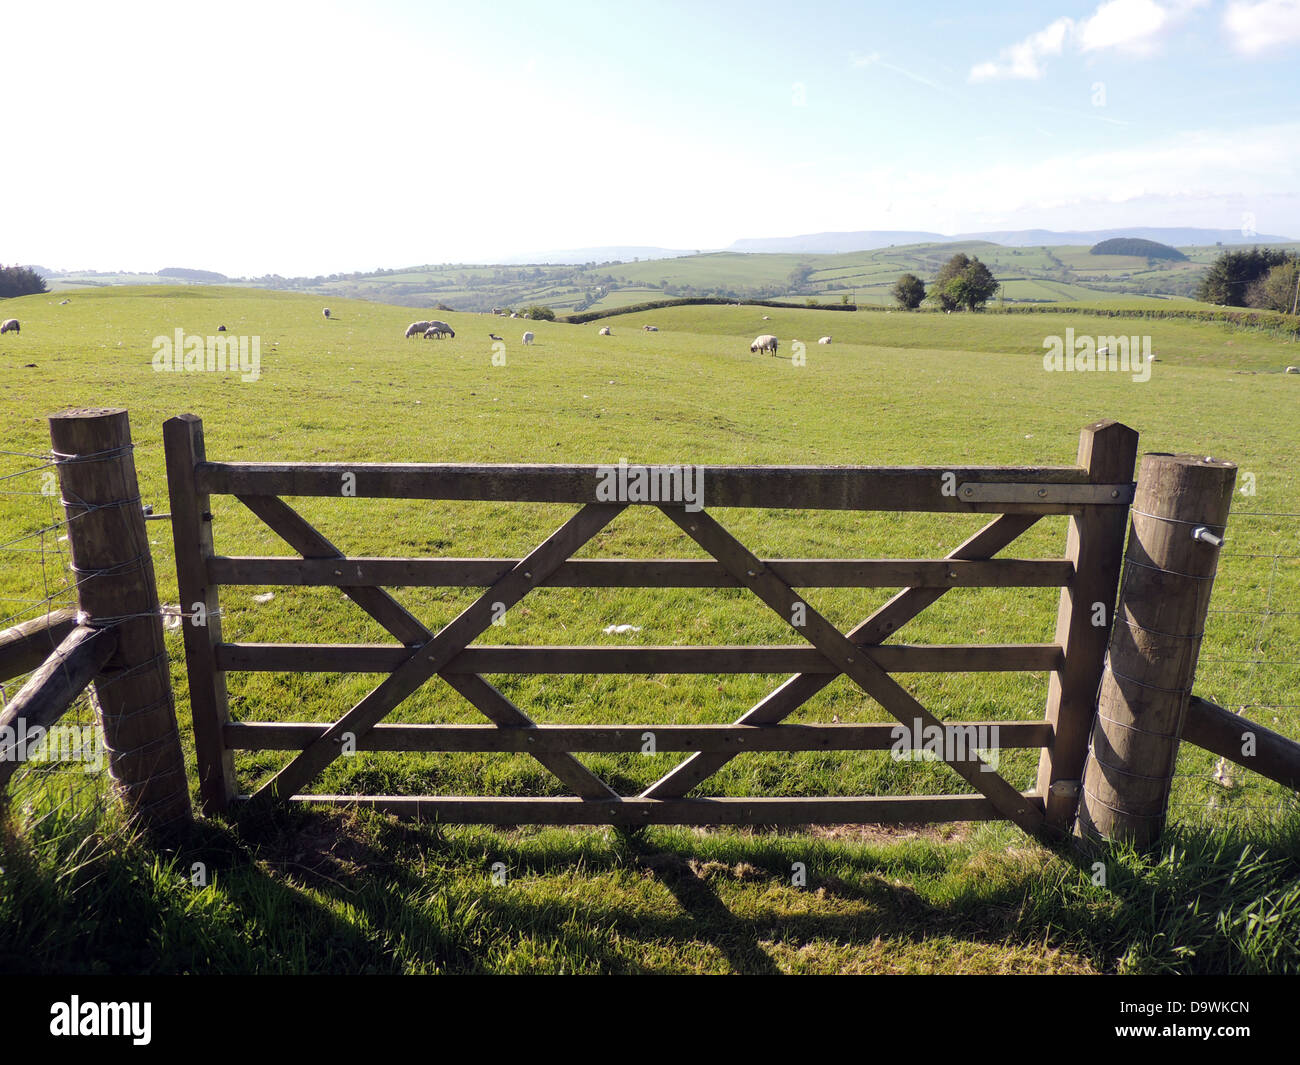 SHEEP FARM near Newchurch, Kington,Herefordshire, England. Photo Tony Gale Stock Photo